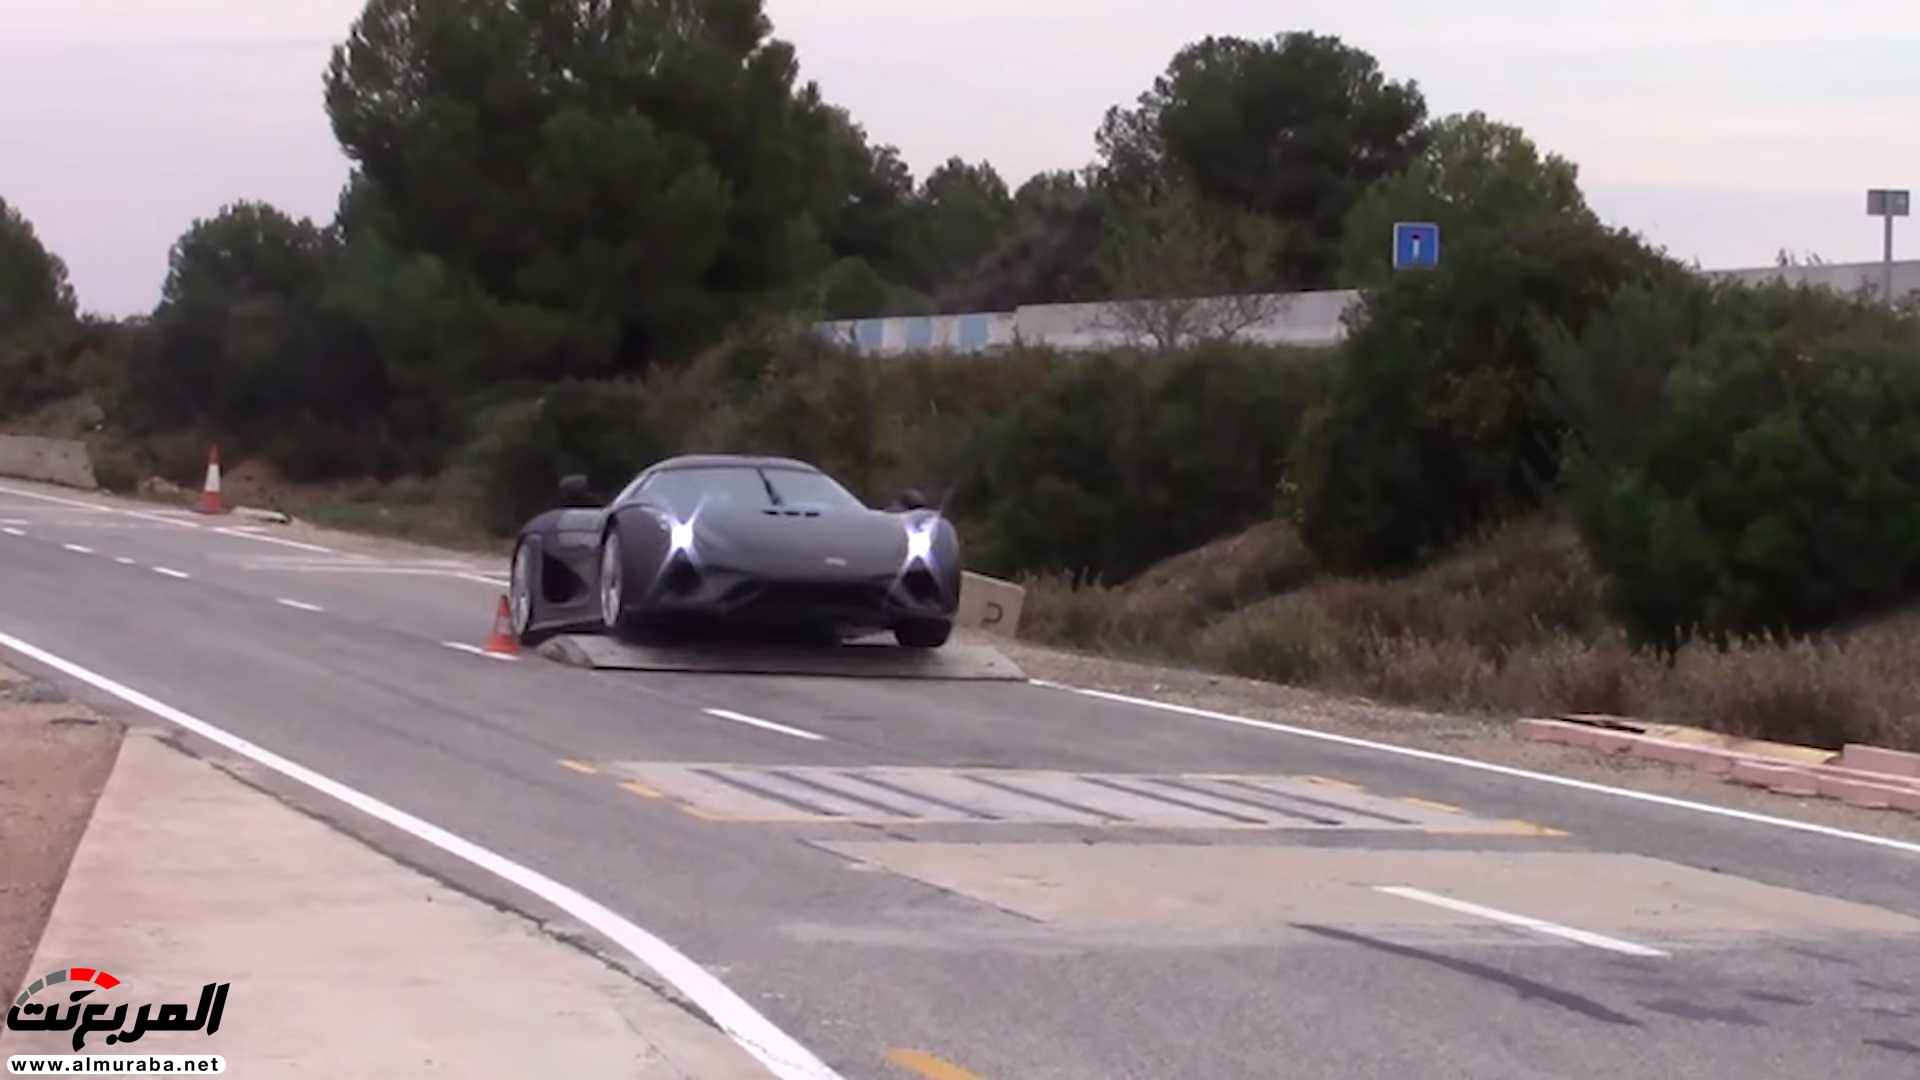 "بالفيديو" اختبار تصادم سيارة كوينيجسيج بقيمة 7.5 مليون ريال! 23